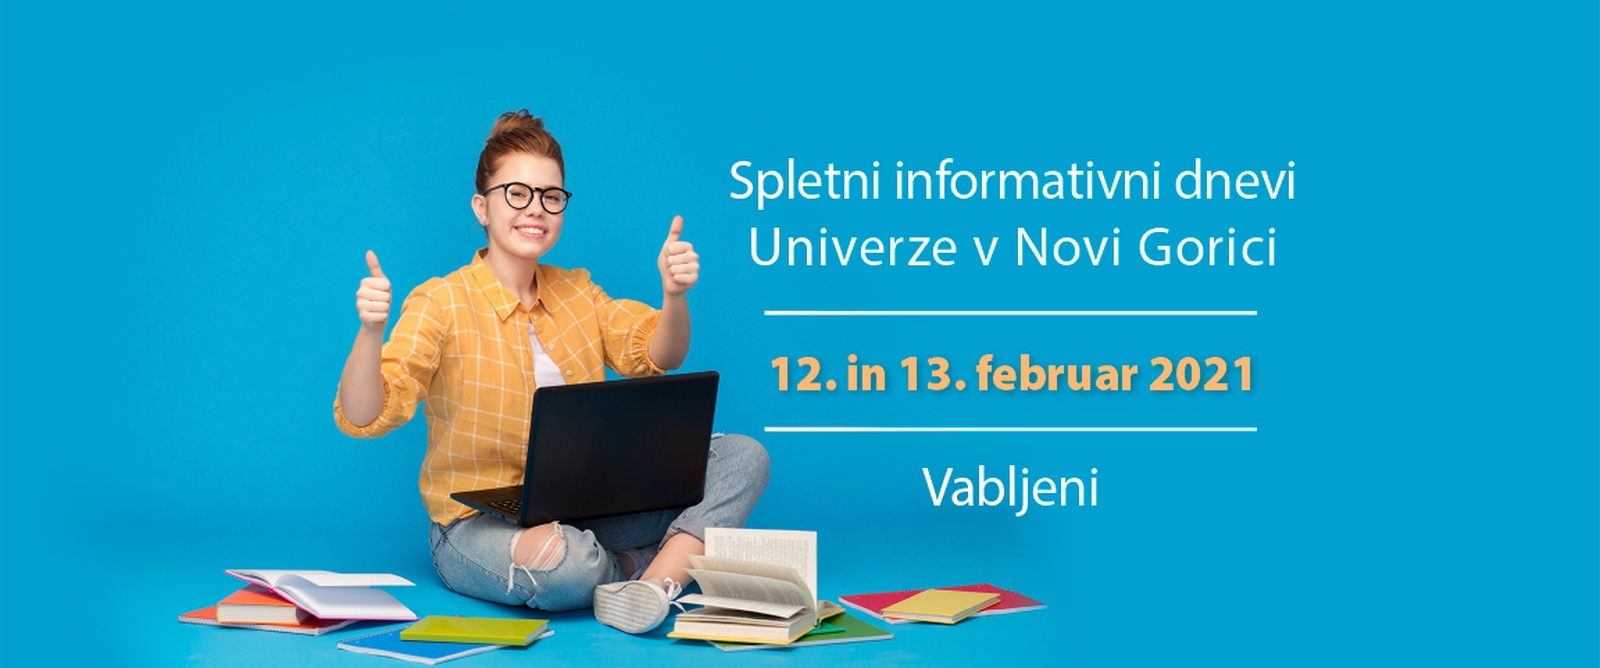 Spletni informativni dnevi Univerze v Novi Gorici